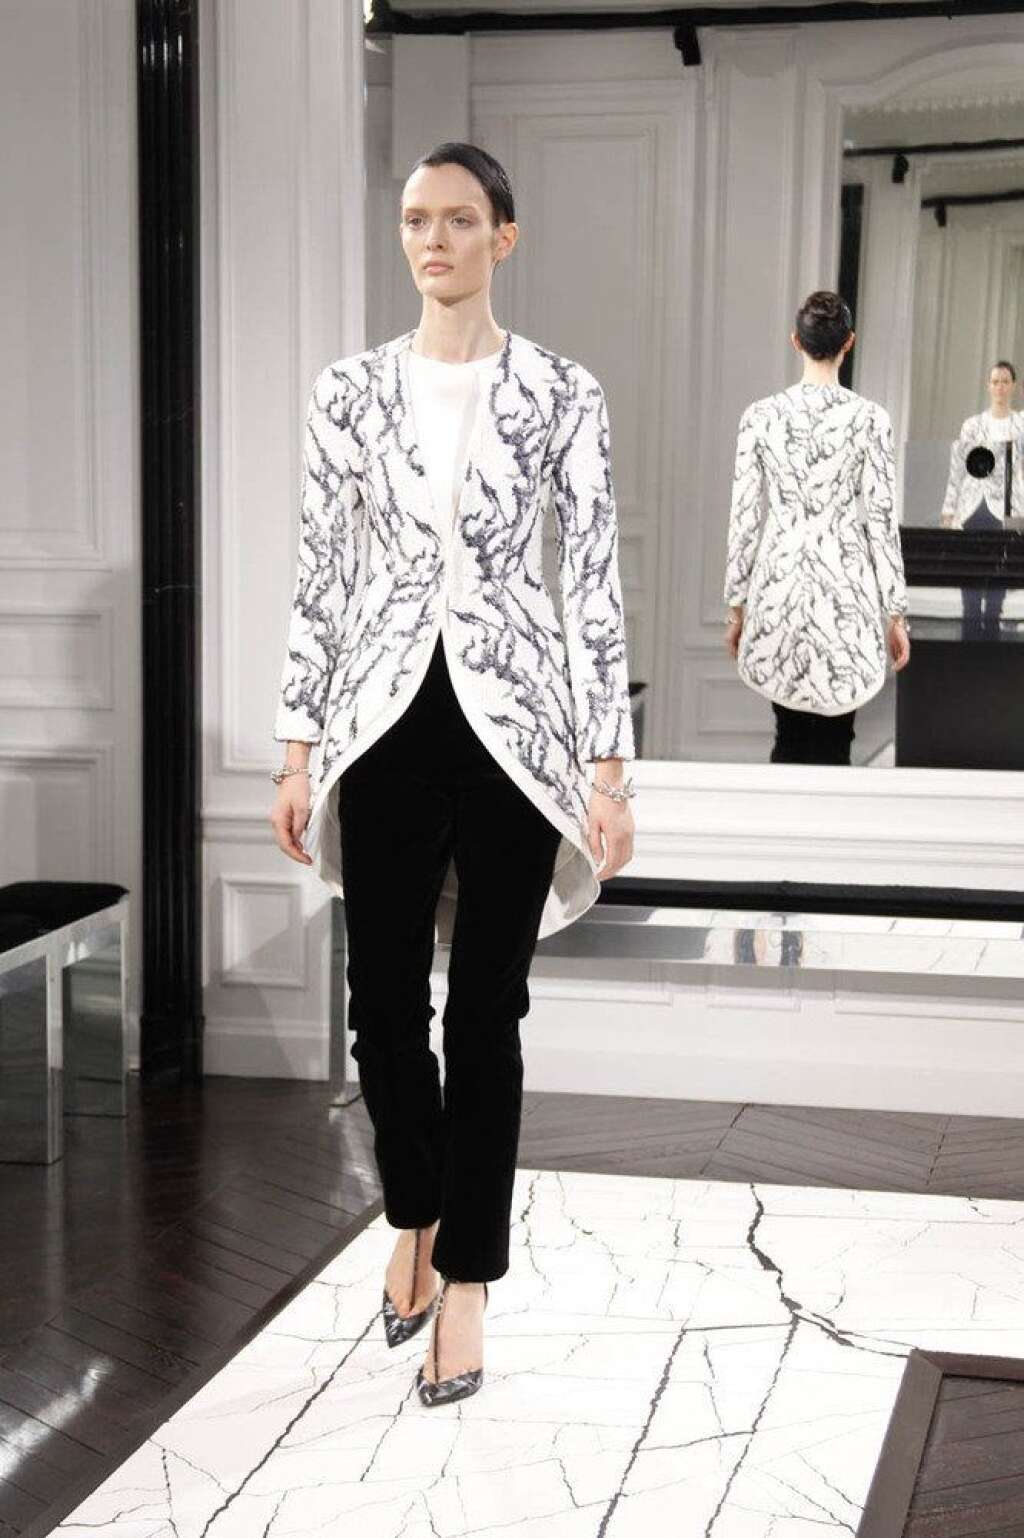 Le marbre de Balenciaga - <a href="http://www.huffingtonpost.fr/raphaelle%20orsini/fashion-week-paris-balenciaga_b_2788928.html">Voir le billet</a>  Fashion week de Paris: <em>Automne-Hiver 2013-2014</em>